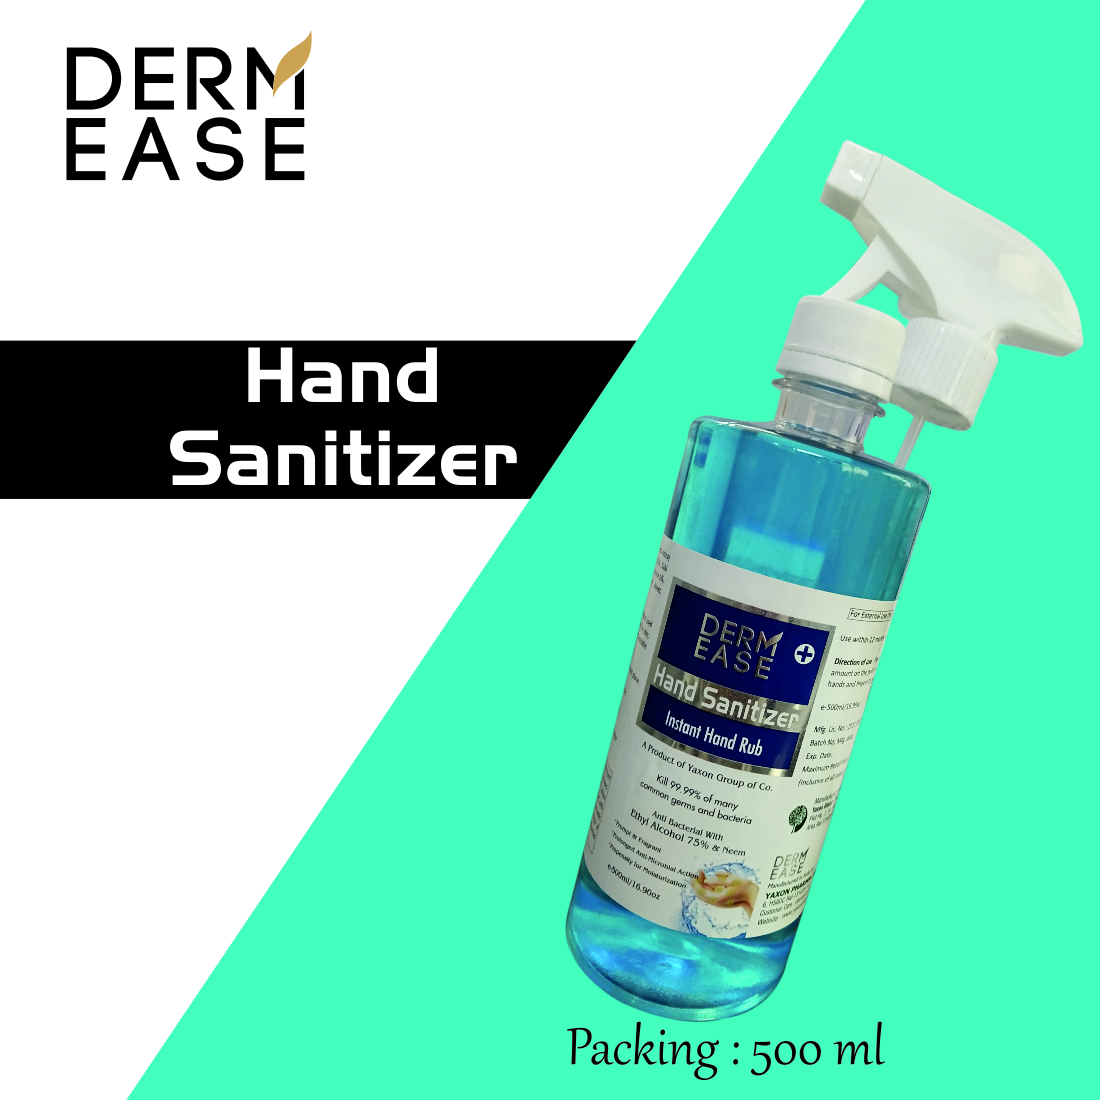 DERM EASE MIST TRIGER SPRAY Hand Sanitizer 500ml